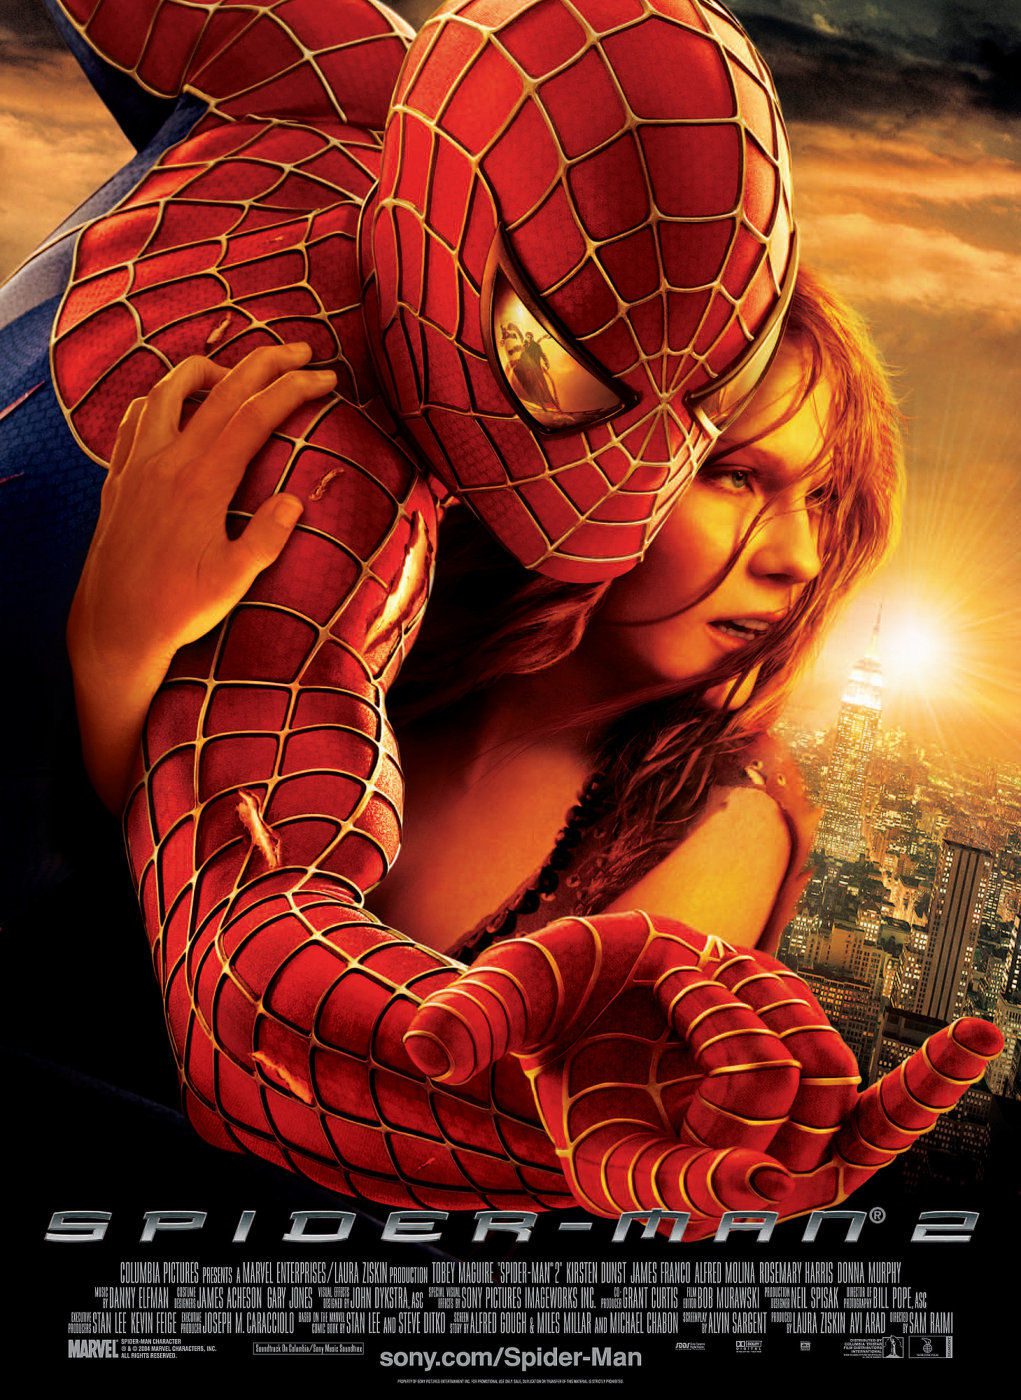 ดูหนังออนไลน์ฟรี Spider-Man 2 ไอ้แมงมุม 2